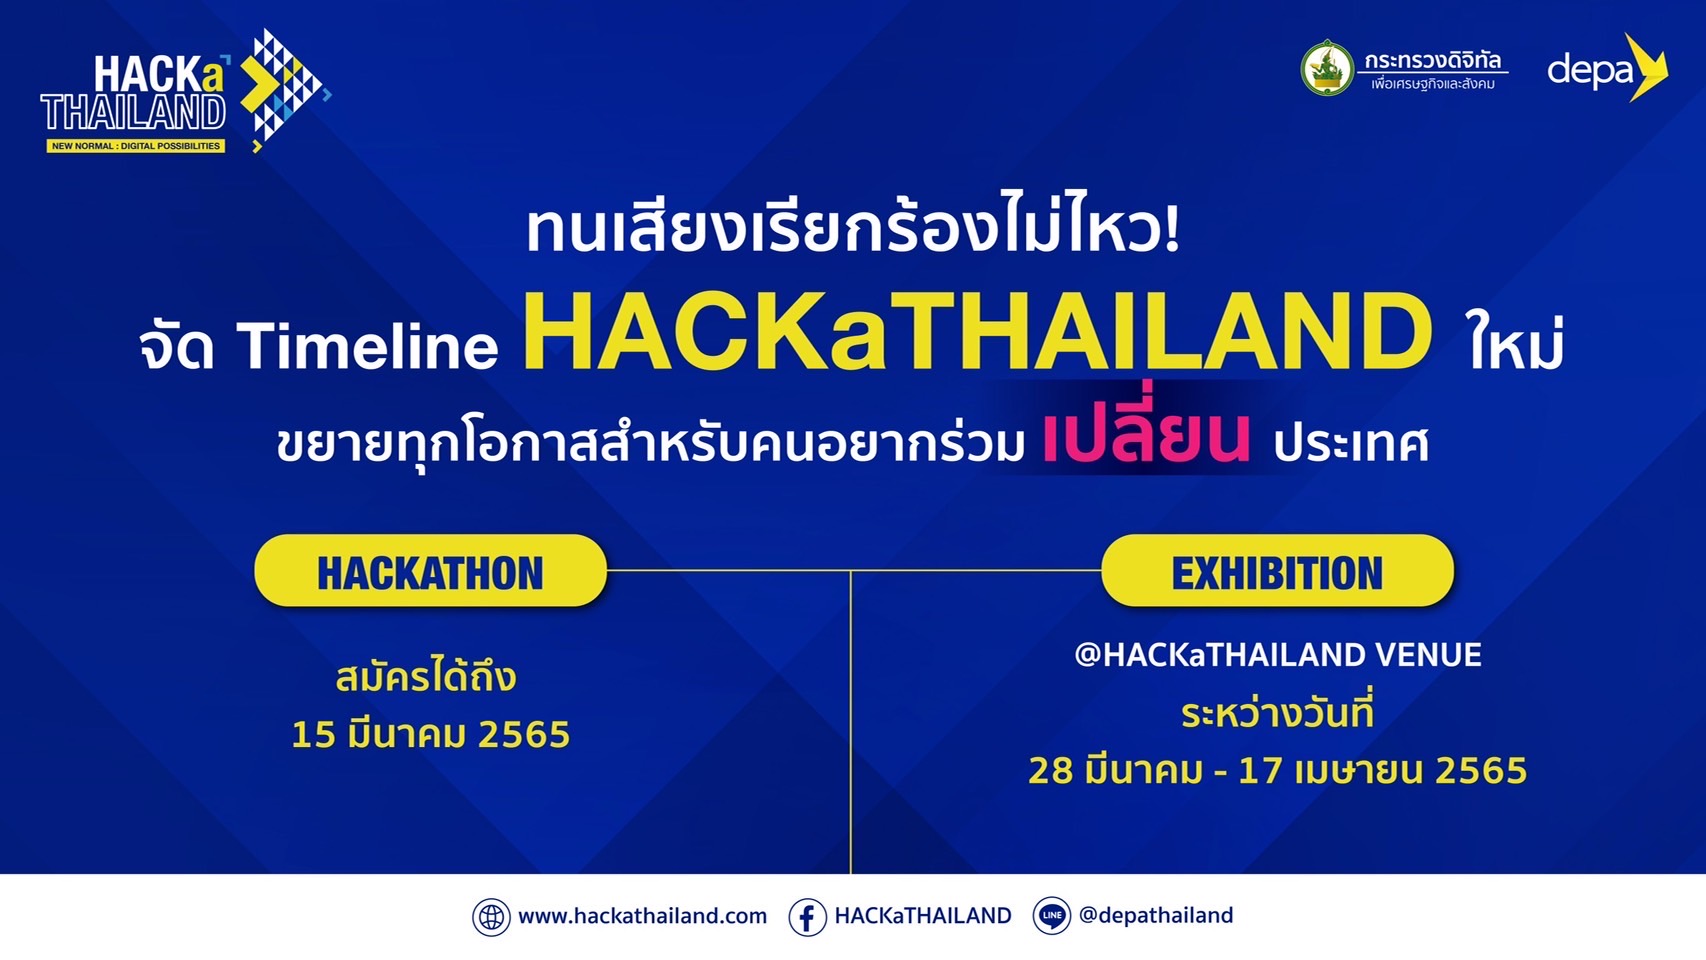 ดีอีเอส - ดีป้า ปรับไทม์ไลน์ HACKaTHAILAND เดินหน้าขยายเวลารับสมัครแข่งขัน พร้อมเนรมิตพื้นที่ย่านบางนาสู่เมืองดิจิทัลเพื่อคนไทย